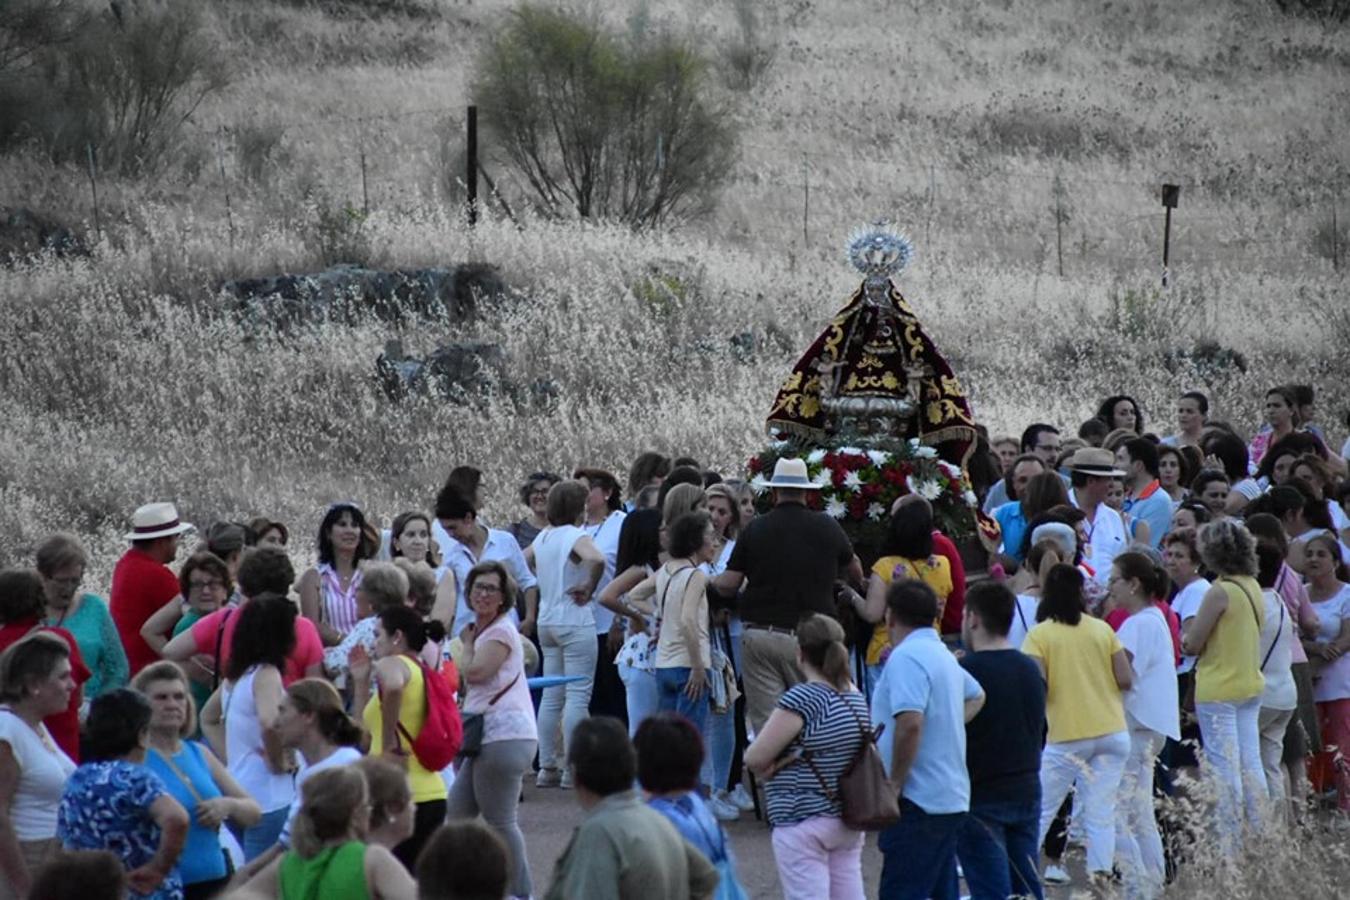 El pueblo de Campanario despidió a su Patrona, que tras 37 días en la parroquia, regresó el domingo 2 de junio a su ermita FOTOS: A. C.